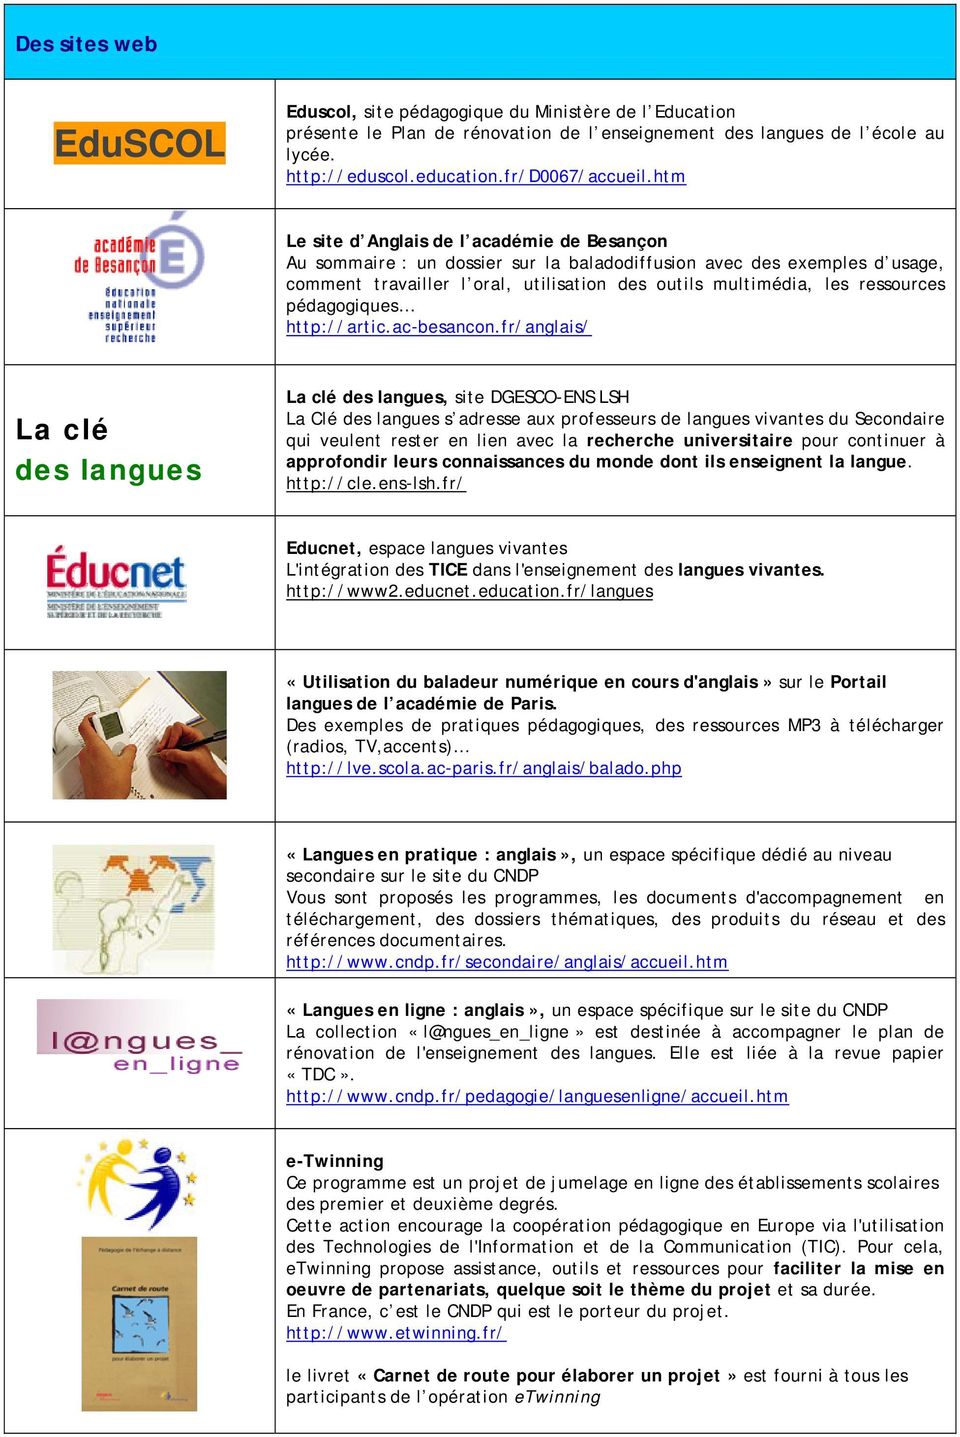 pédagogiques http://artic.ac-besancon.